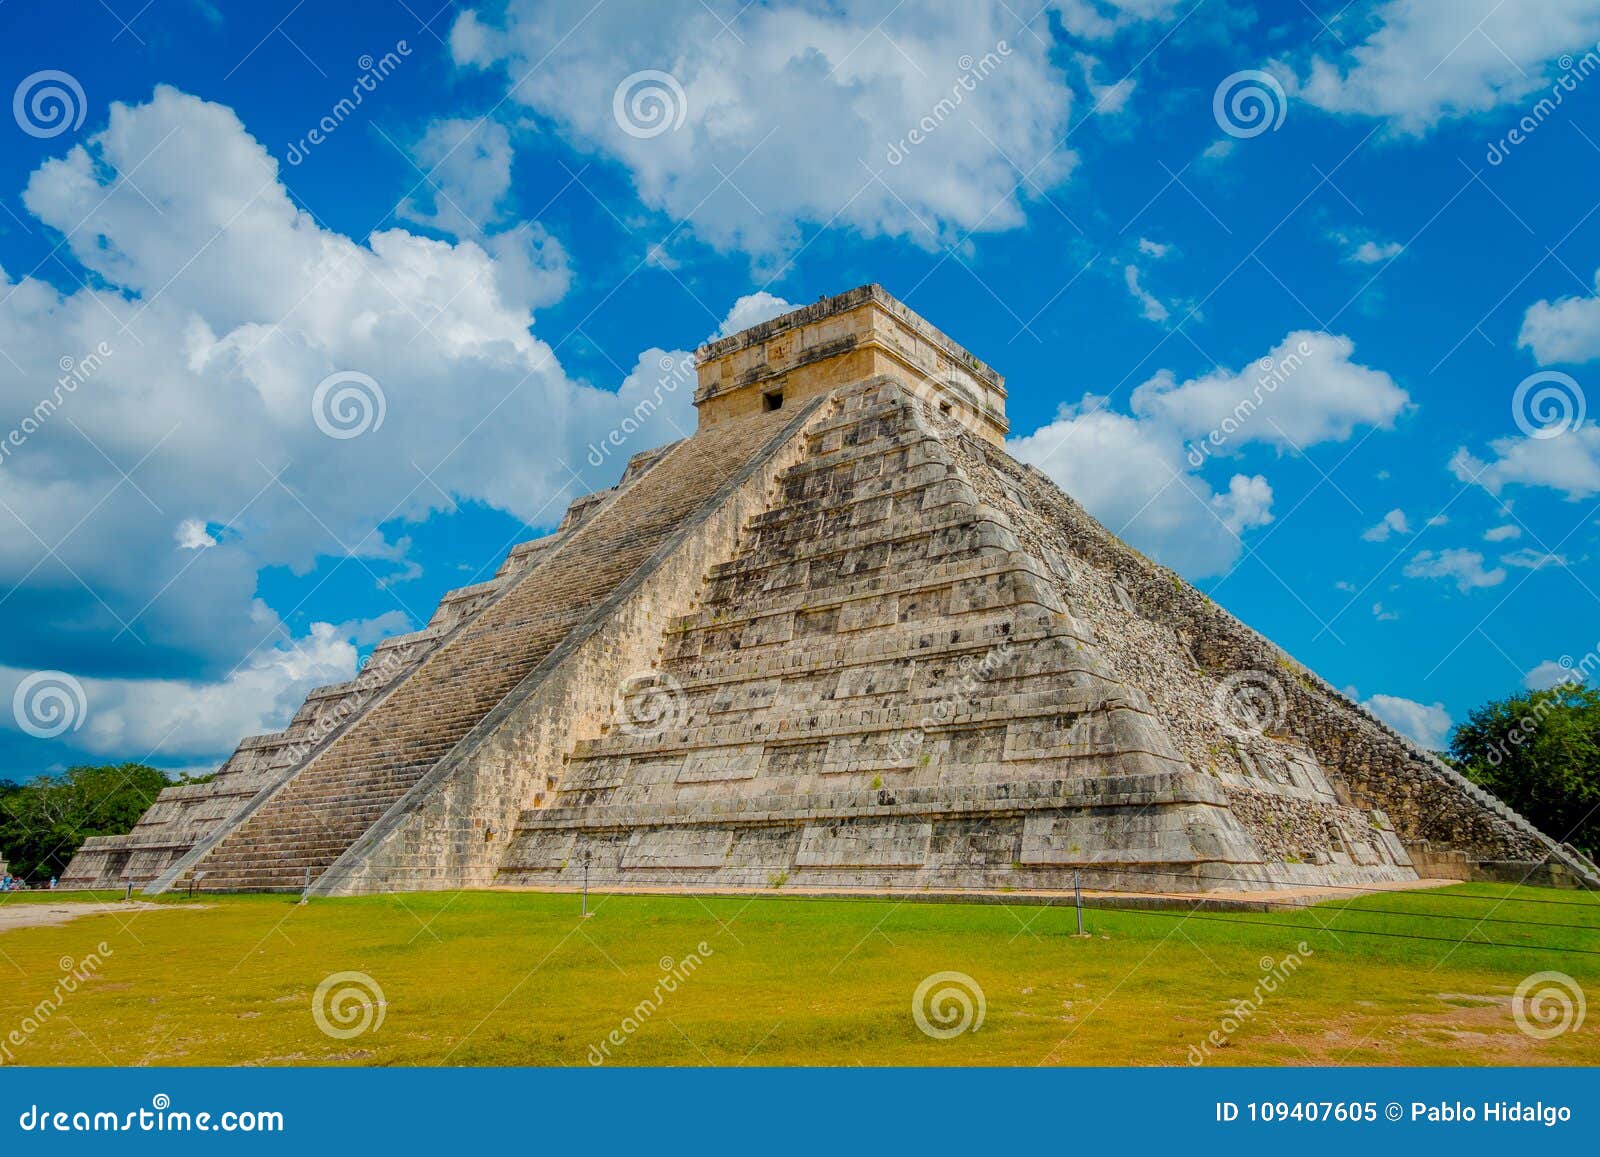 CHICHEN ITZA, MEXICO - NOVEMBER 12, 2017: Moment av den berömda pyramiden på Chichen Itza på den Yucatan halvön i Mexico